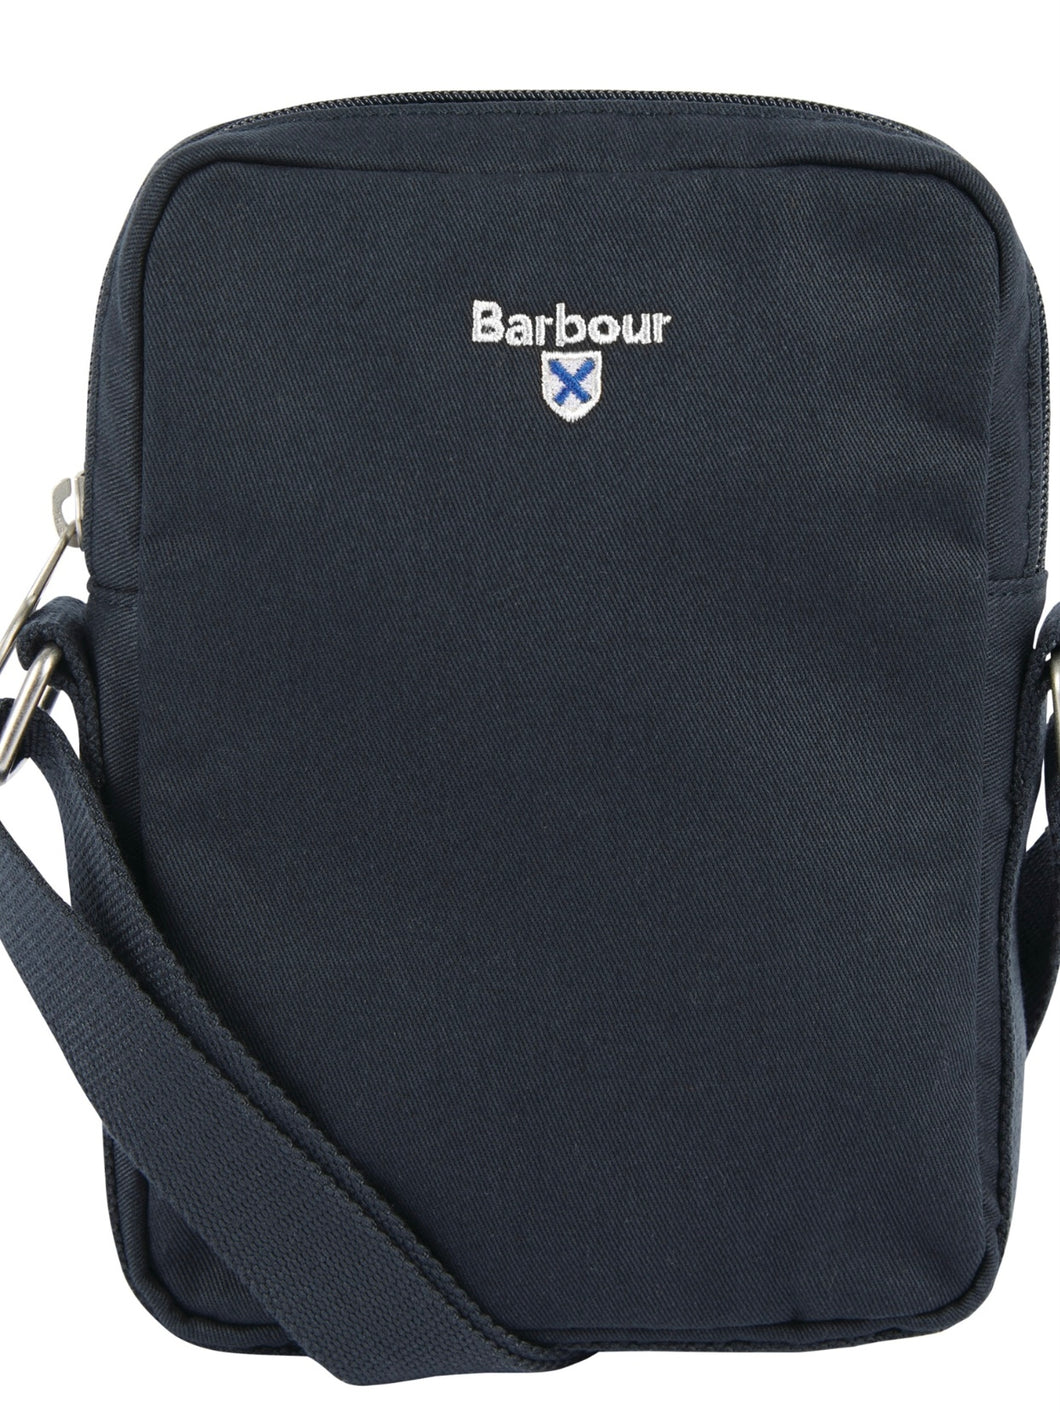 Barbour cascade crossbody bag